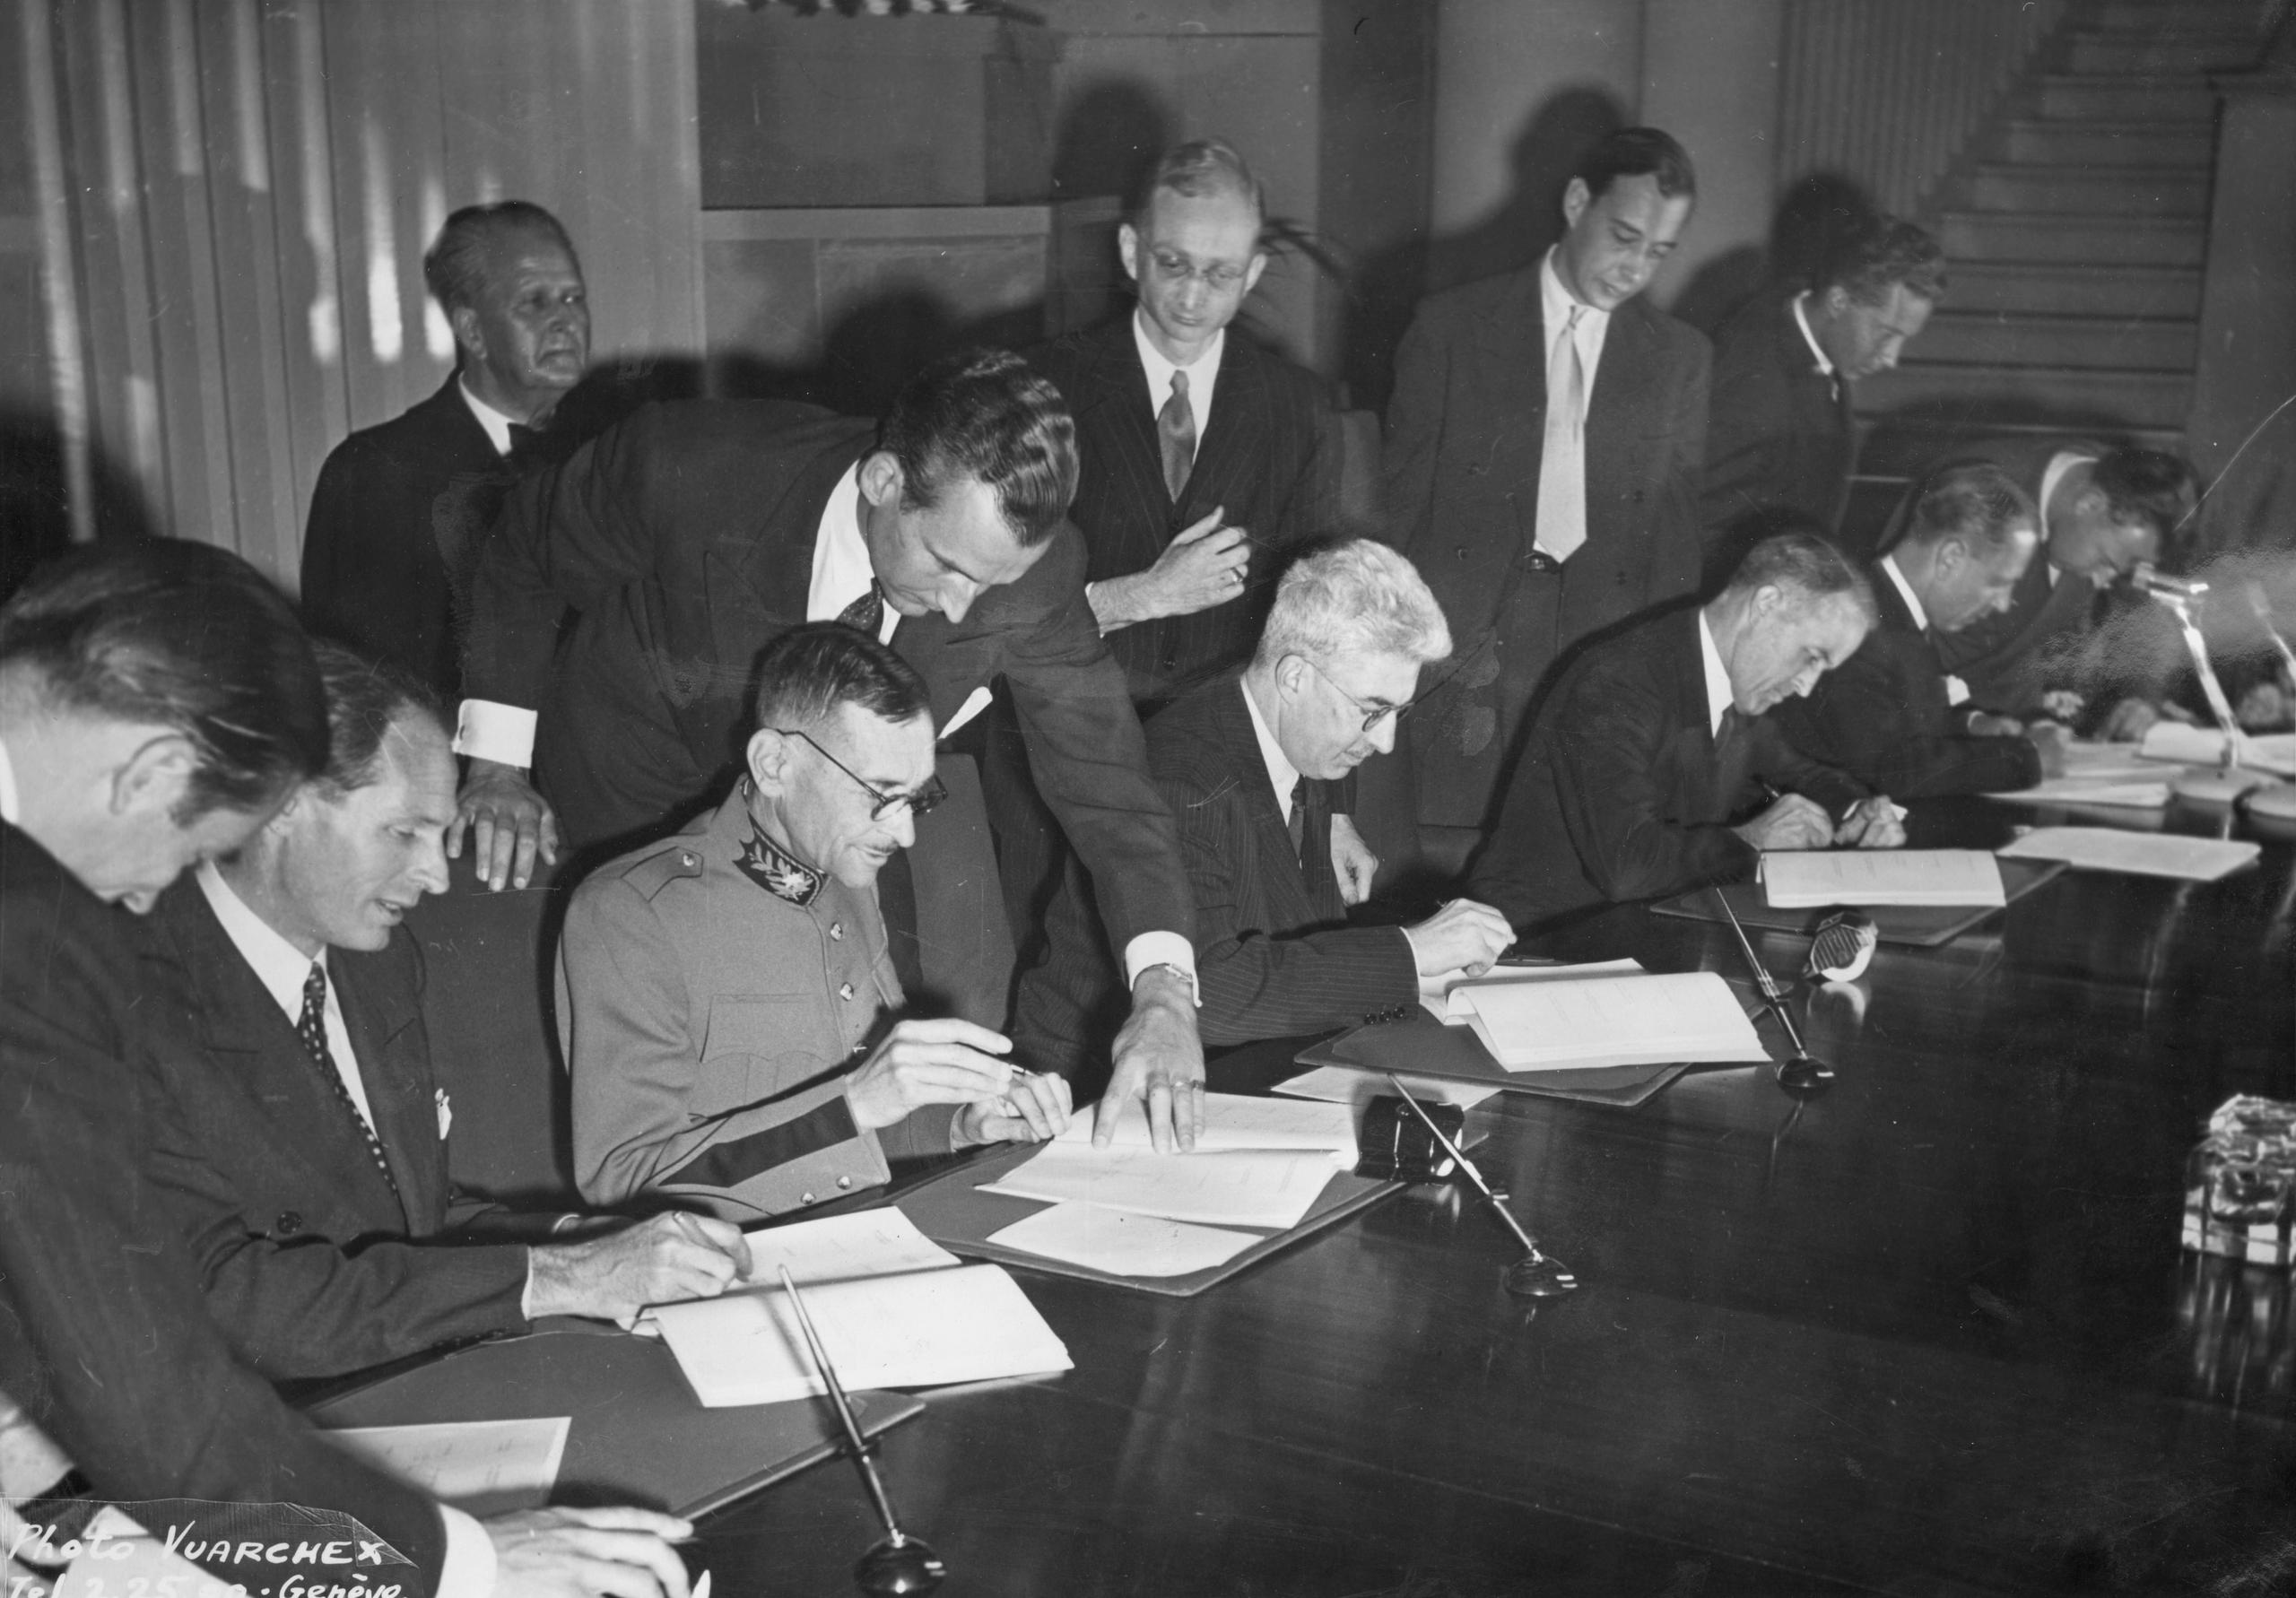 1949年に調印されたジュネーブ諸条約は、発効前から朝鮮半島で困難に遭遇した